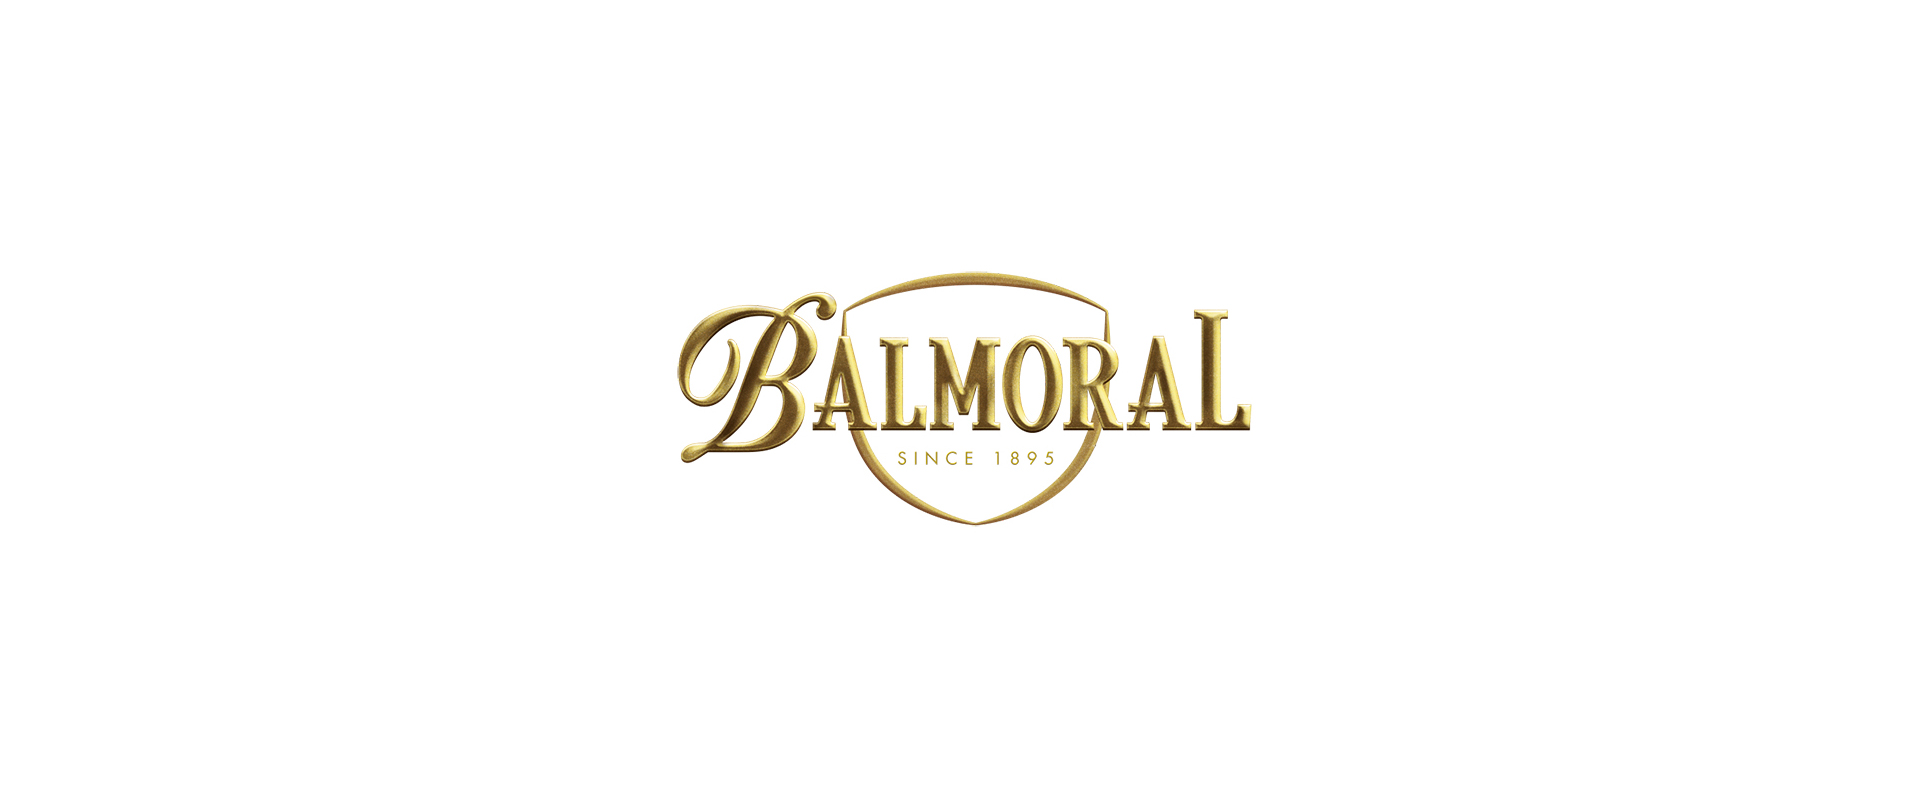 New World Cigars > Balmoral